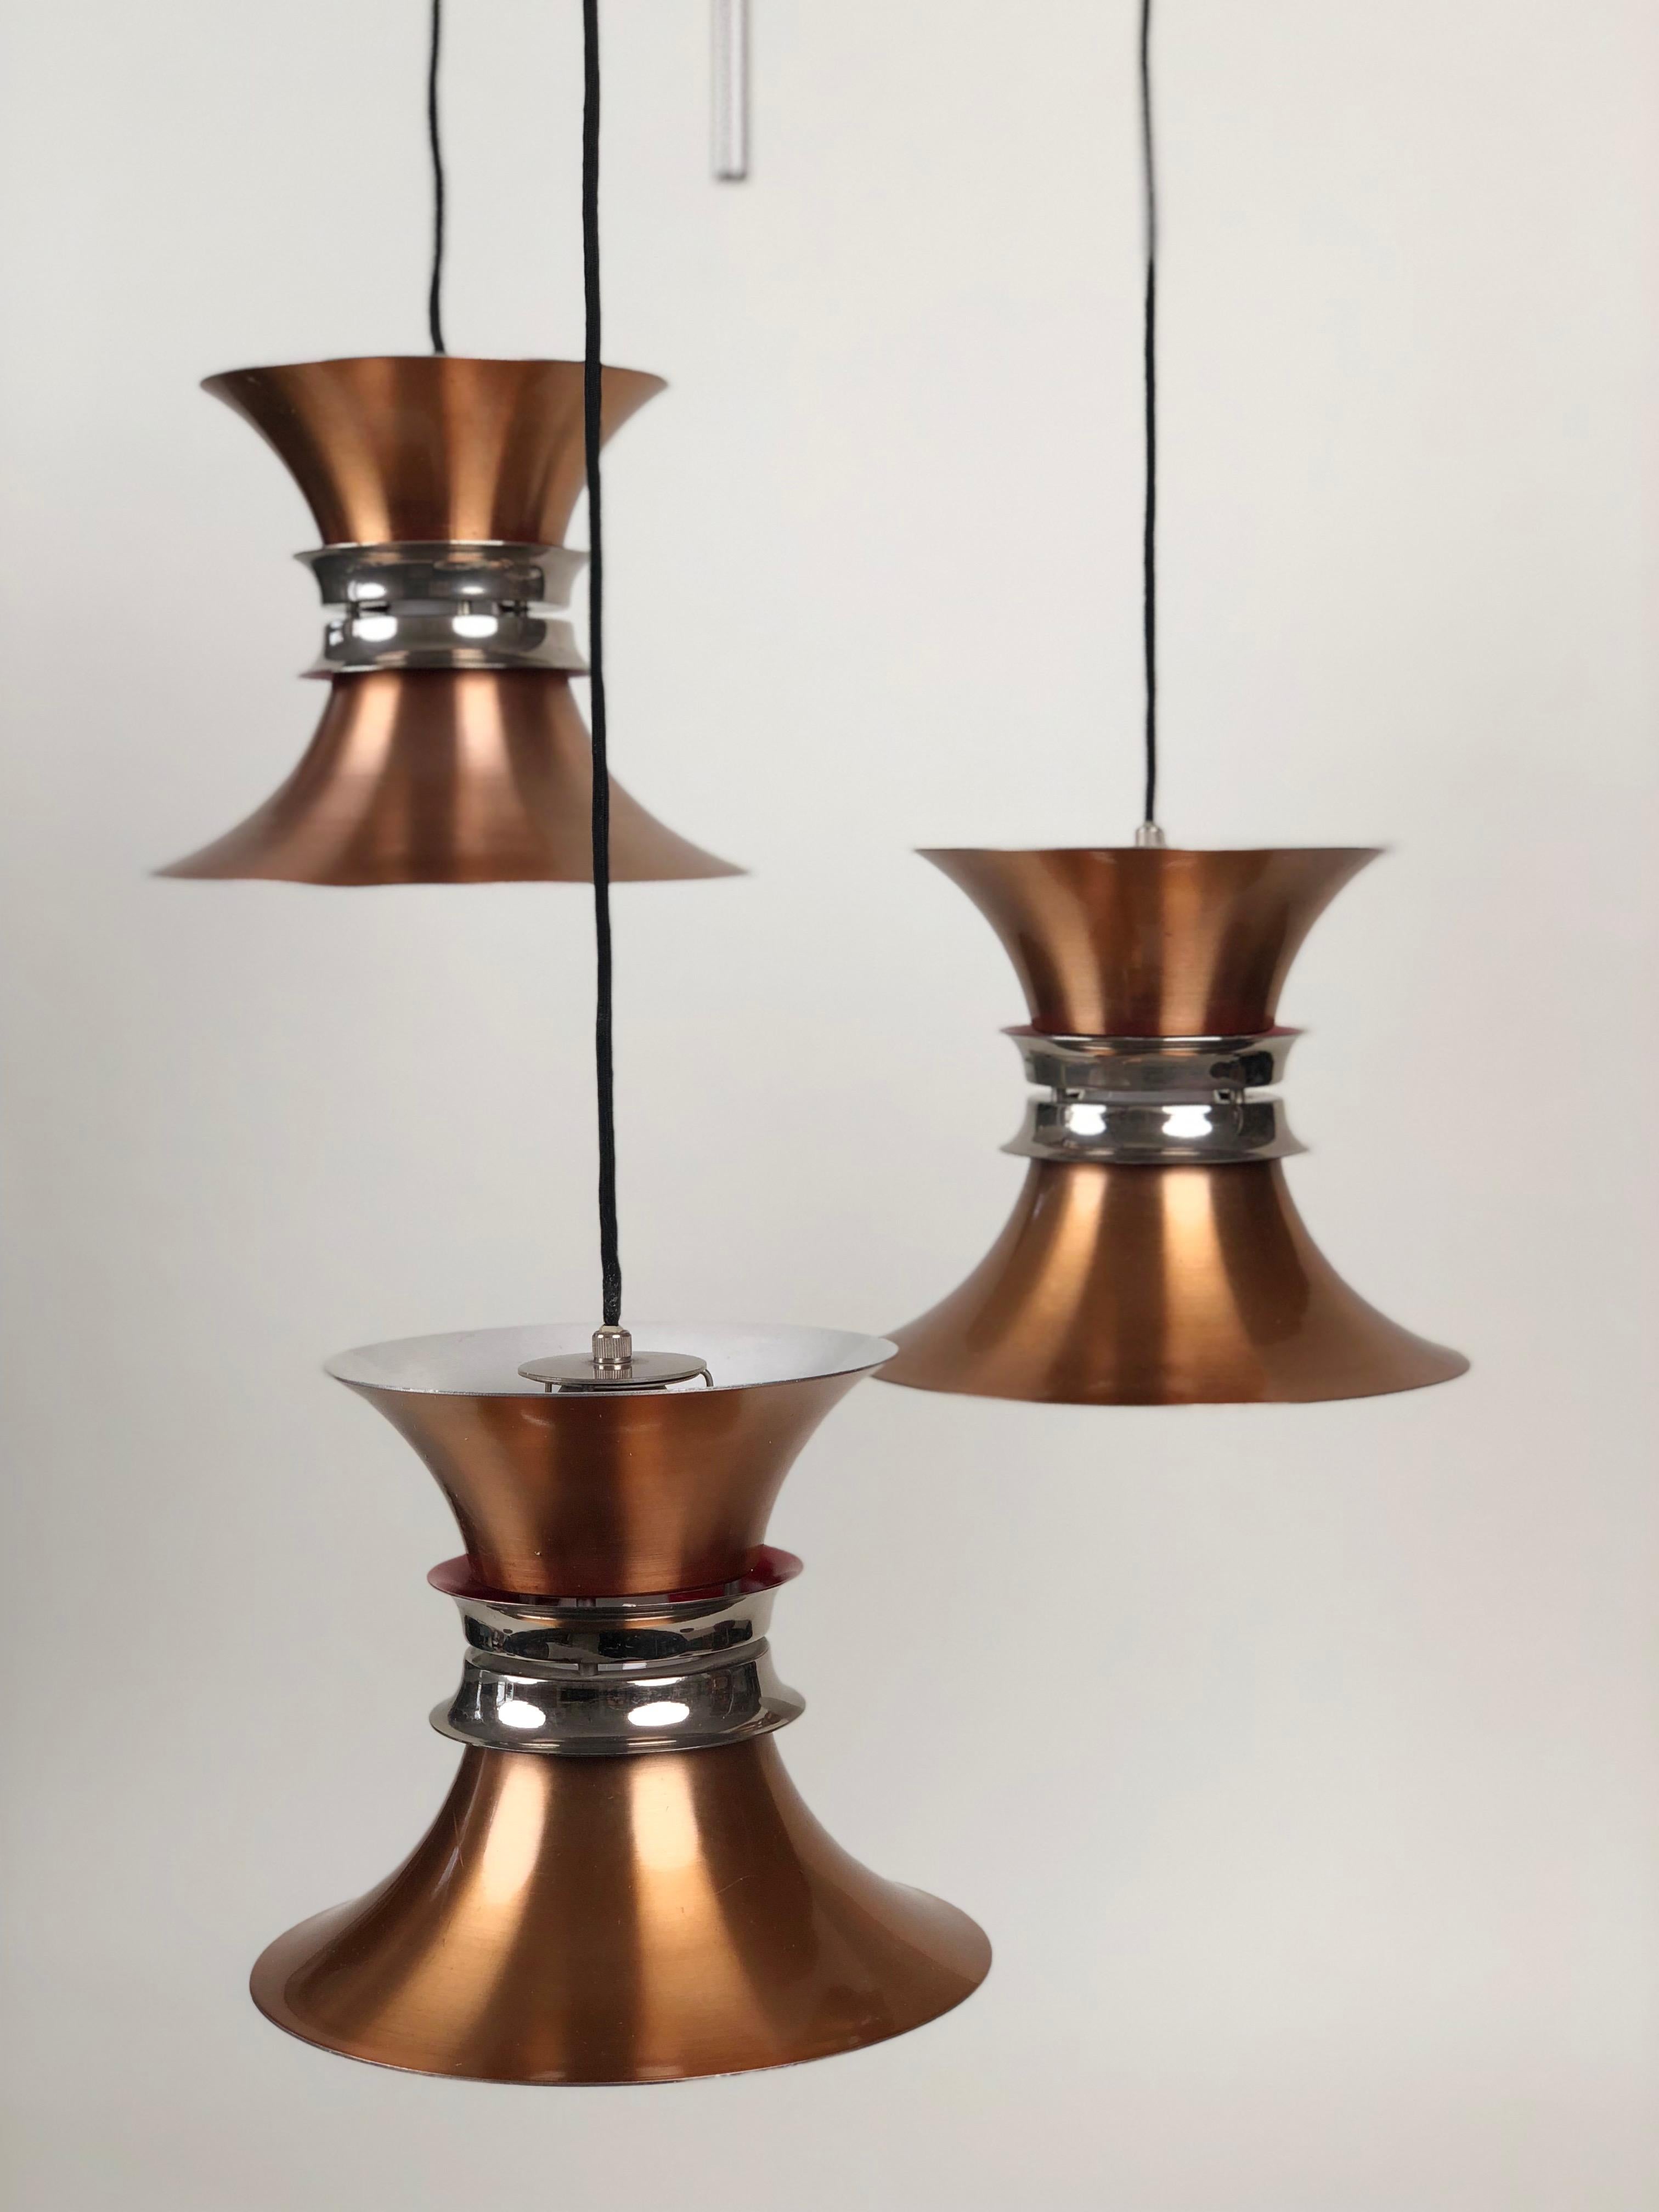 Une rare lampe suspendue à trois éléments conçue par Carl Thore pour Granhaga Metallindustri. Cet exemple fait partie de la série Trava.
Il se compose de trois lampes, chacune composée d'éléments empilés en cuivre anodisé, avec une surface